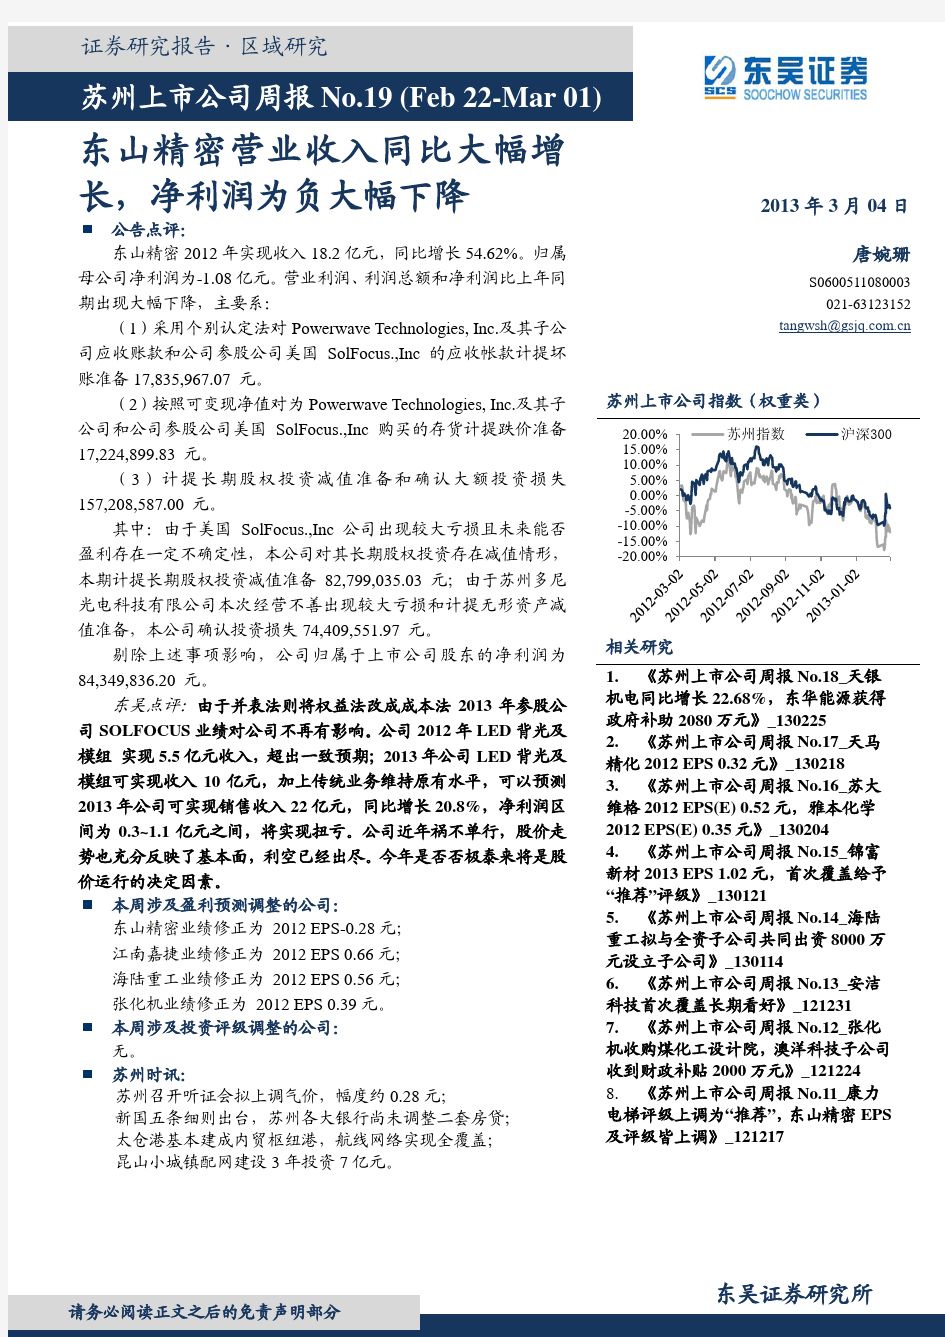 东吴证券：东山精密营业收入同比大幅增长 净利润为负大幅下降